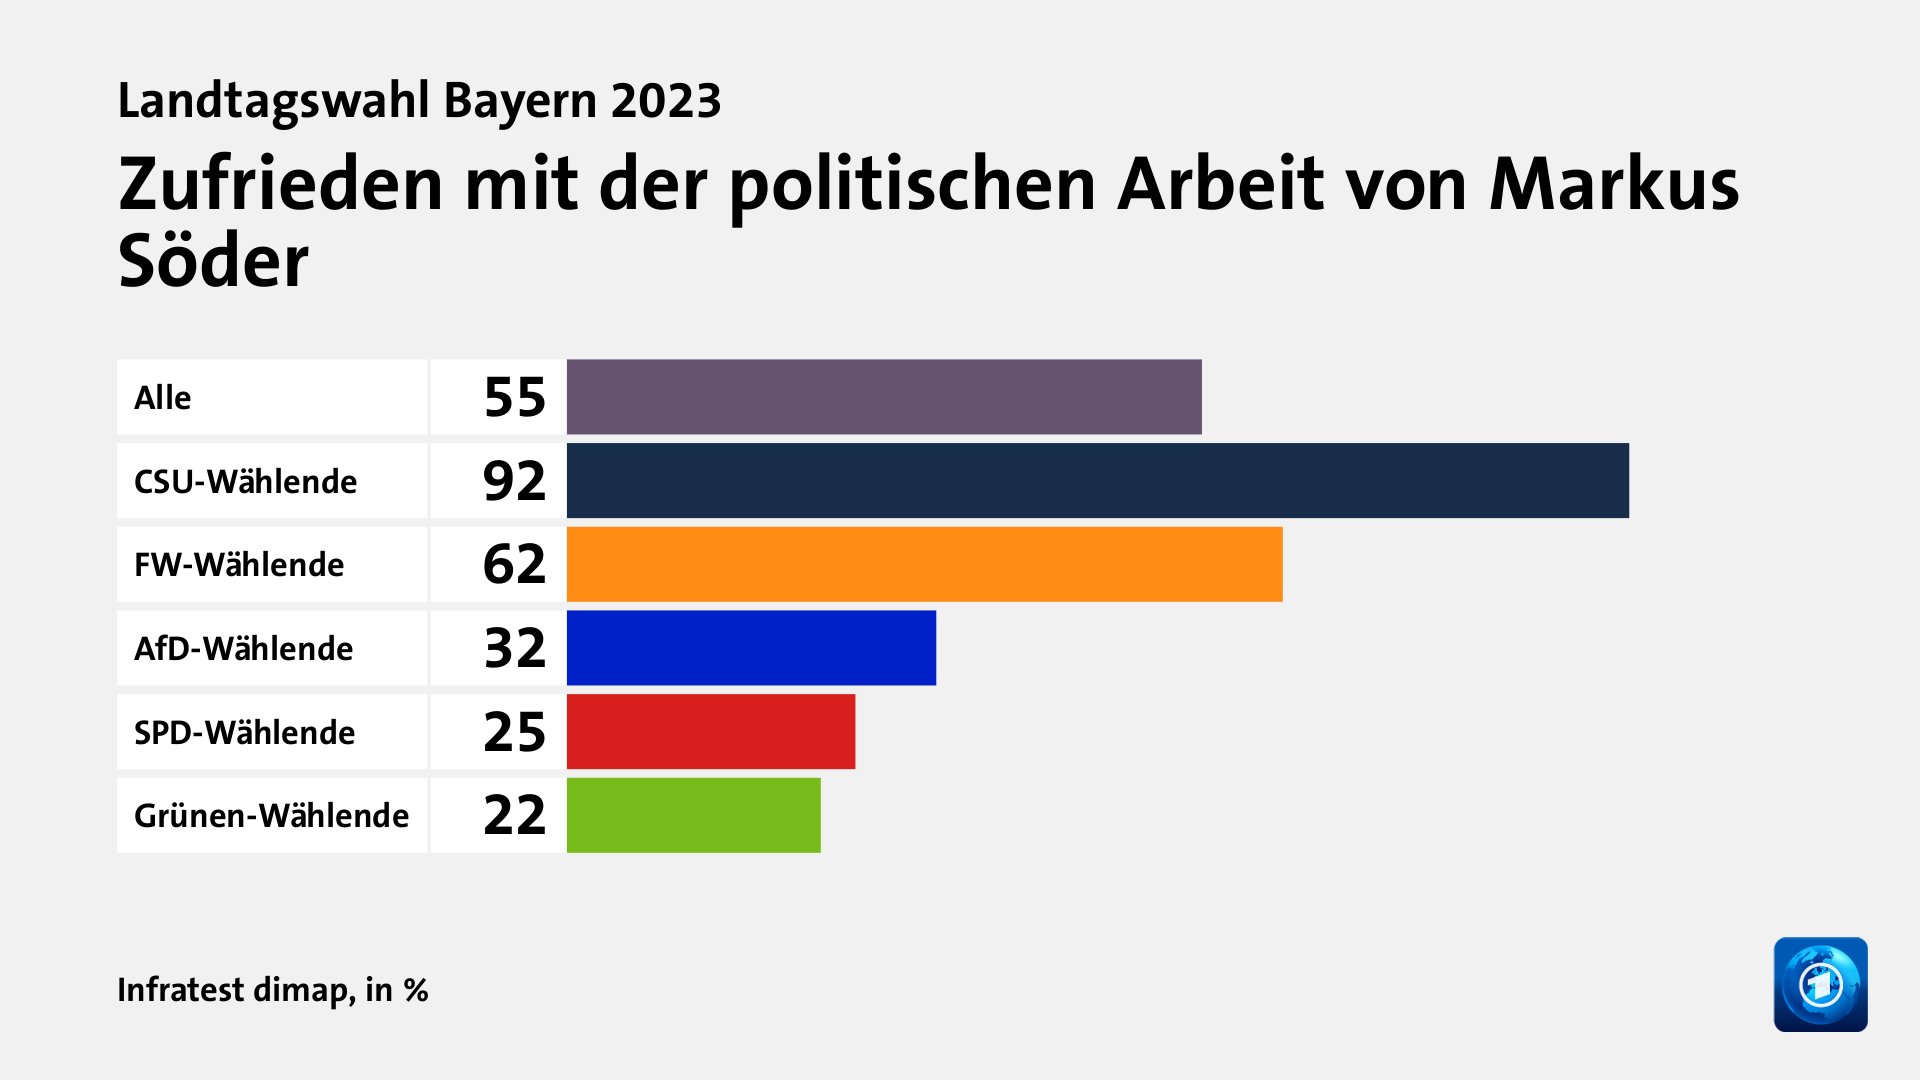 Zufrieden mit der politischen Arbeit von Markus Söder, in %: Alle 55, CSU-Wählende 92, FW-Wählende 62, AfD-Wählende 32, SPD-Wählende 25, Grünen-Wählende 22, Quelle: Infratest dimap